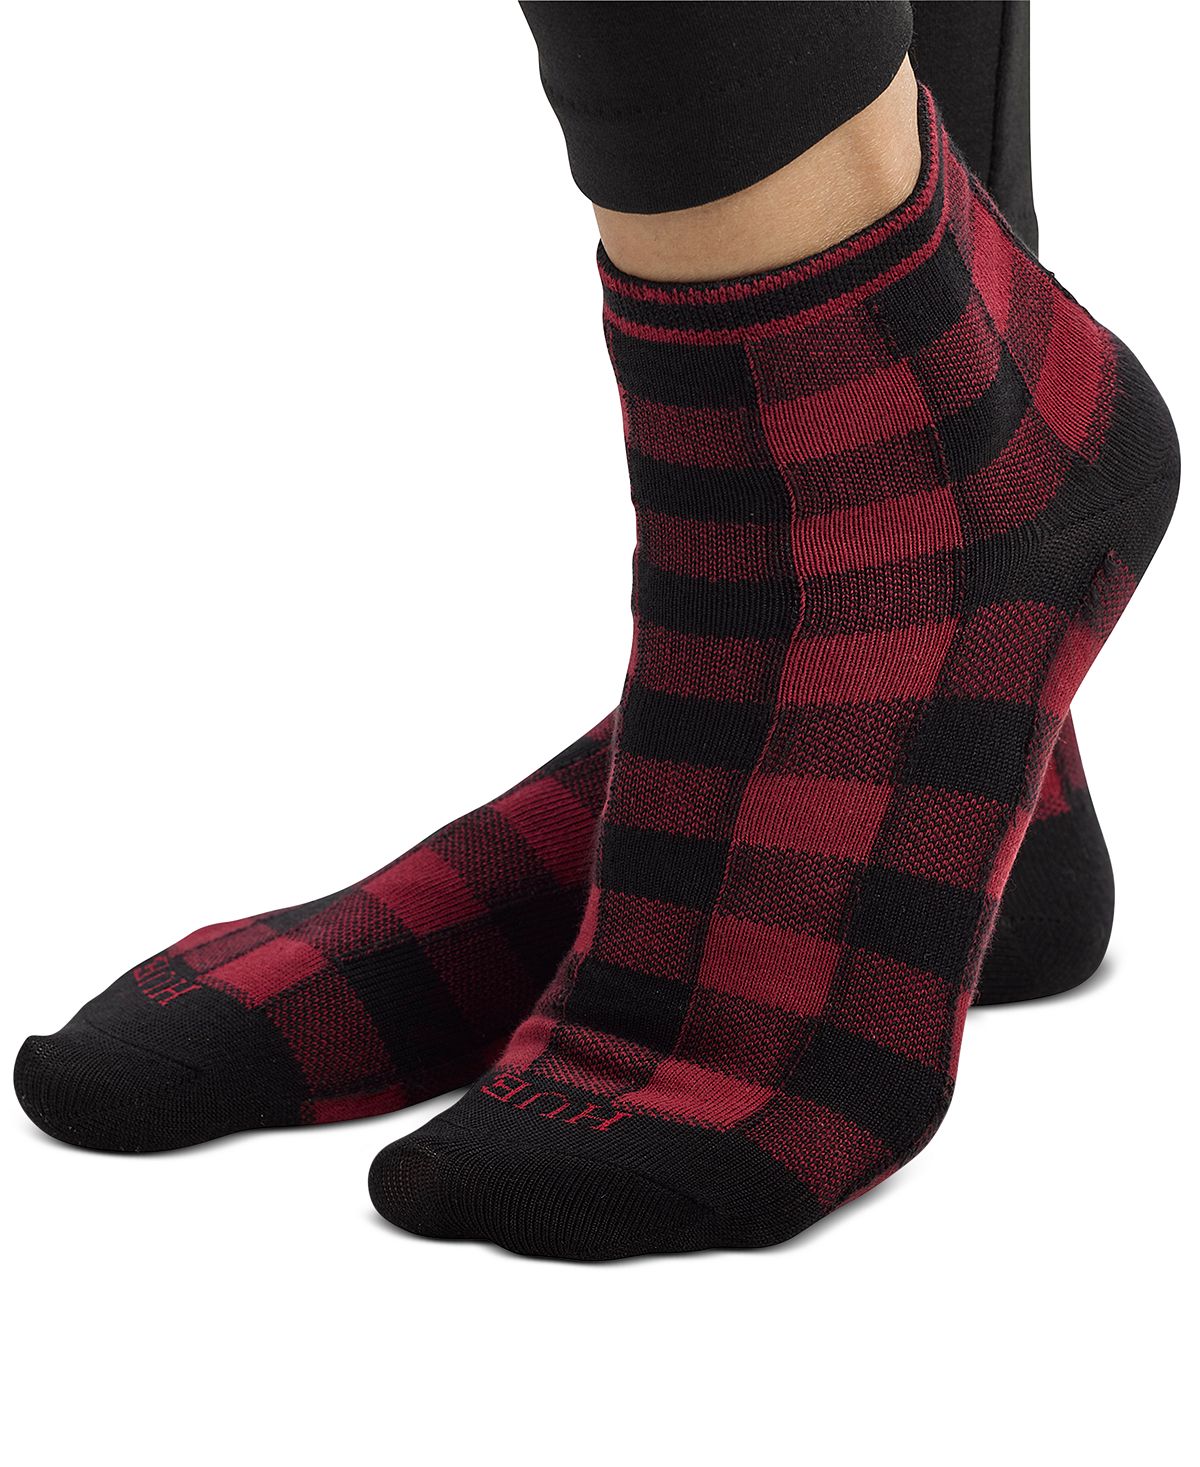 Hue let's Get Cozy Leggings & Socks 2pc Gift Set Red